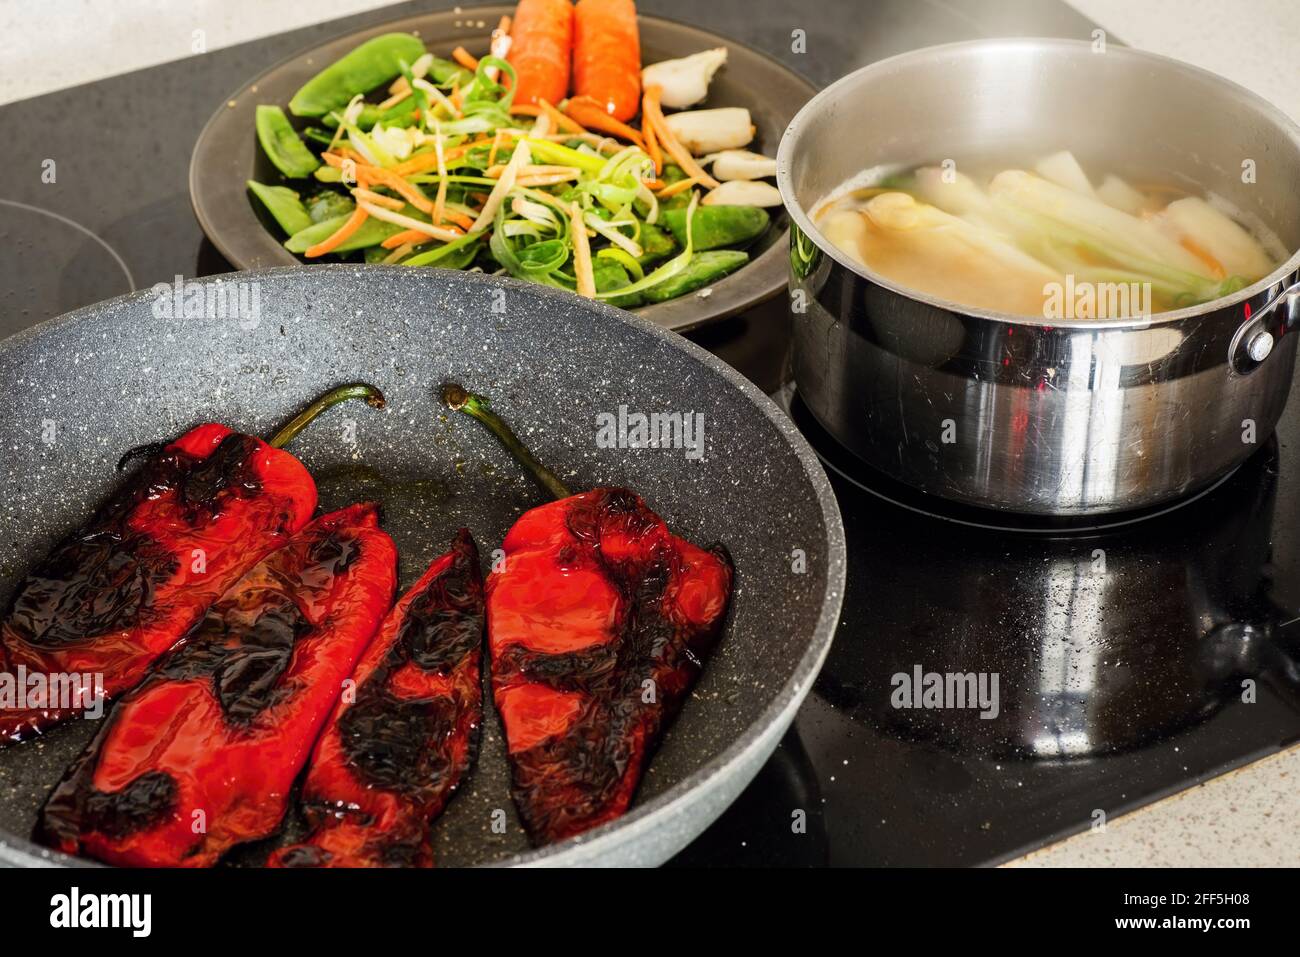 Pfanne mit geröstetem Paprika, Topf mit kochendem Spargel und Teller mit geschnittenem Gemüse auf heissem Keramikherd. Vegetarische Gerichte werden zubereitet. Stockfoto